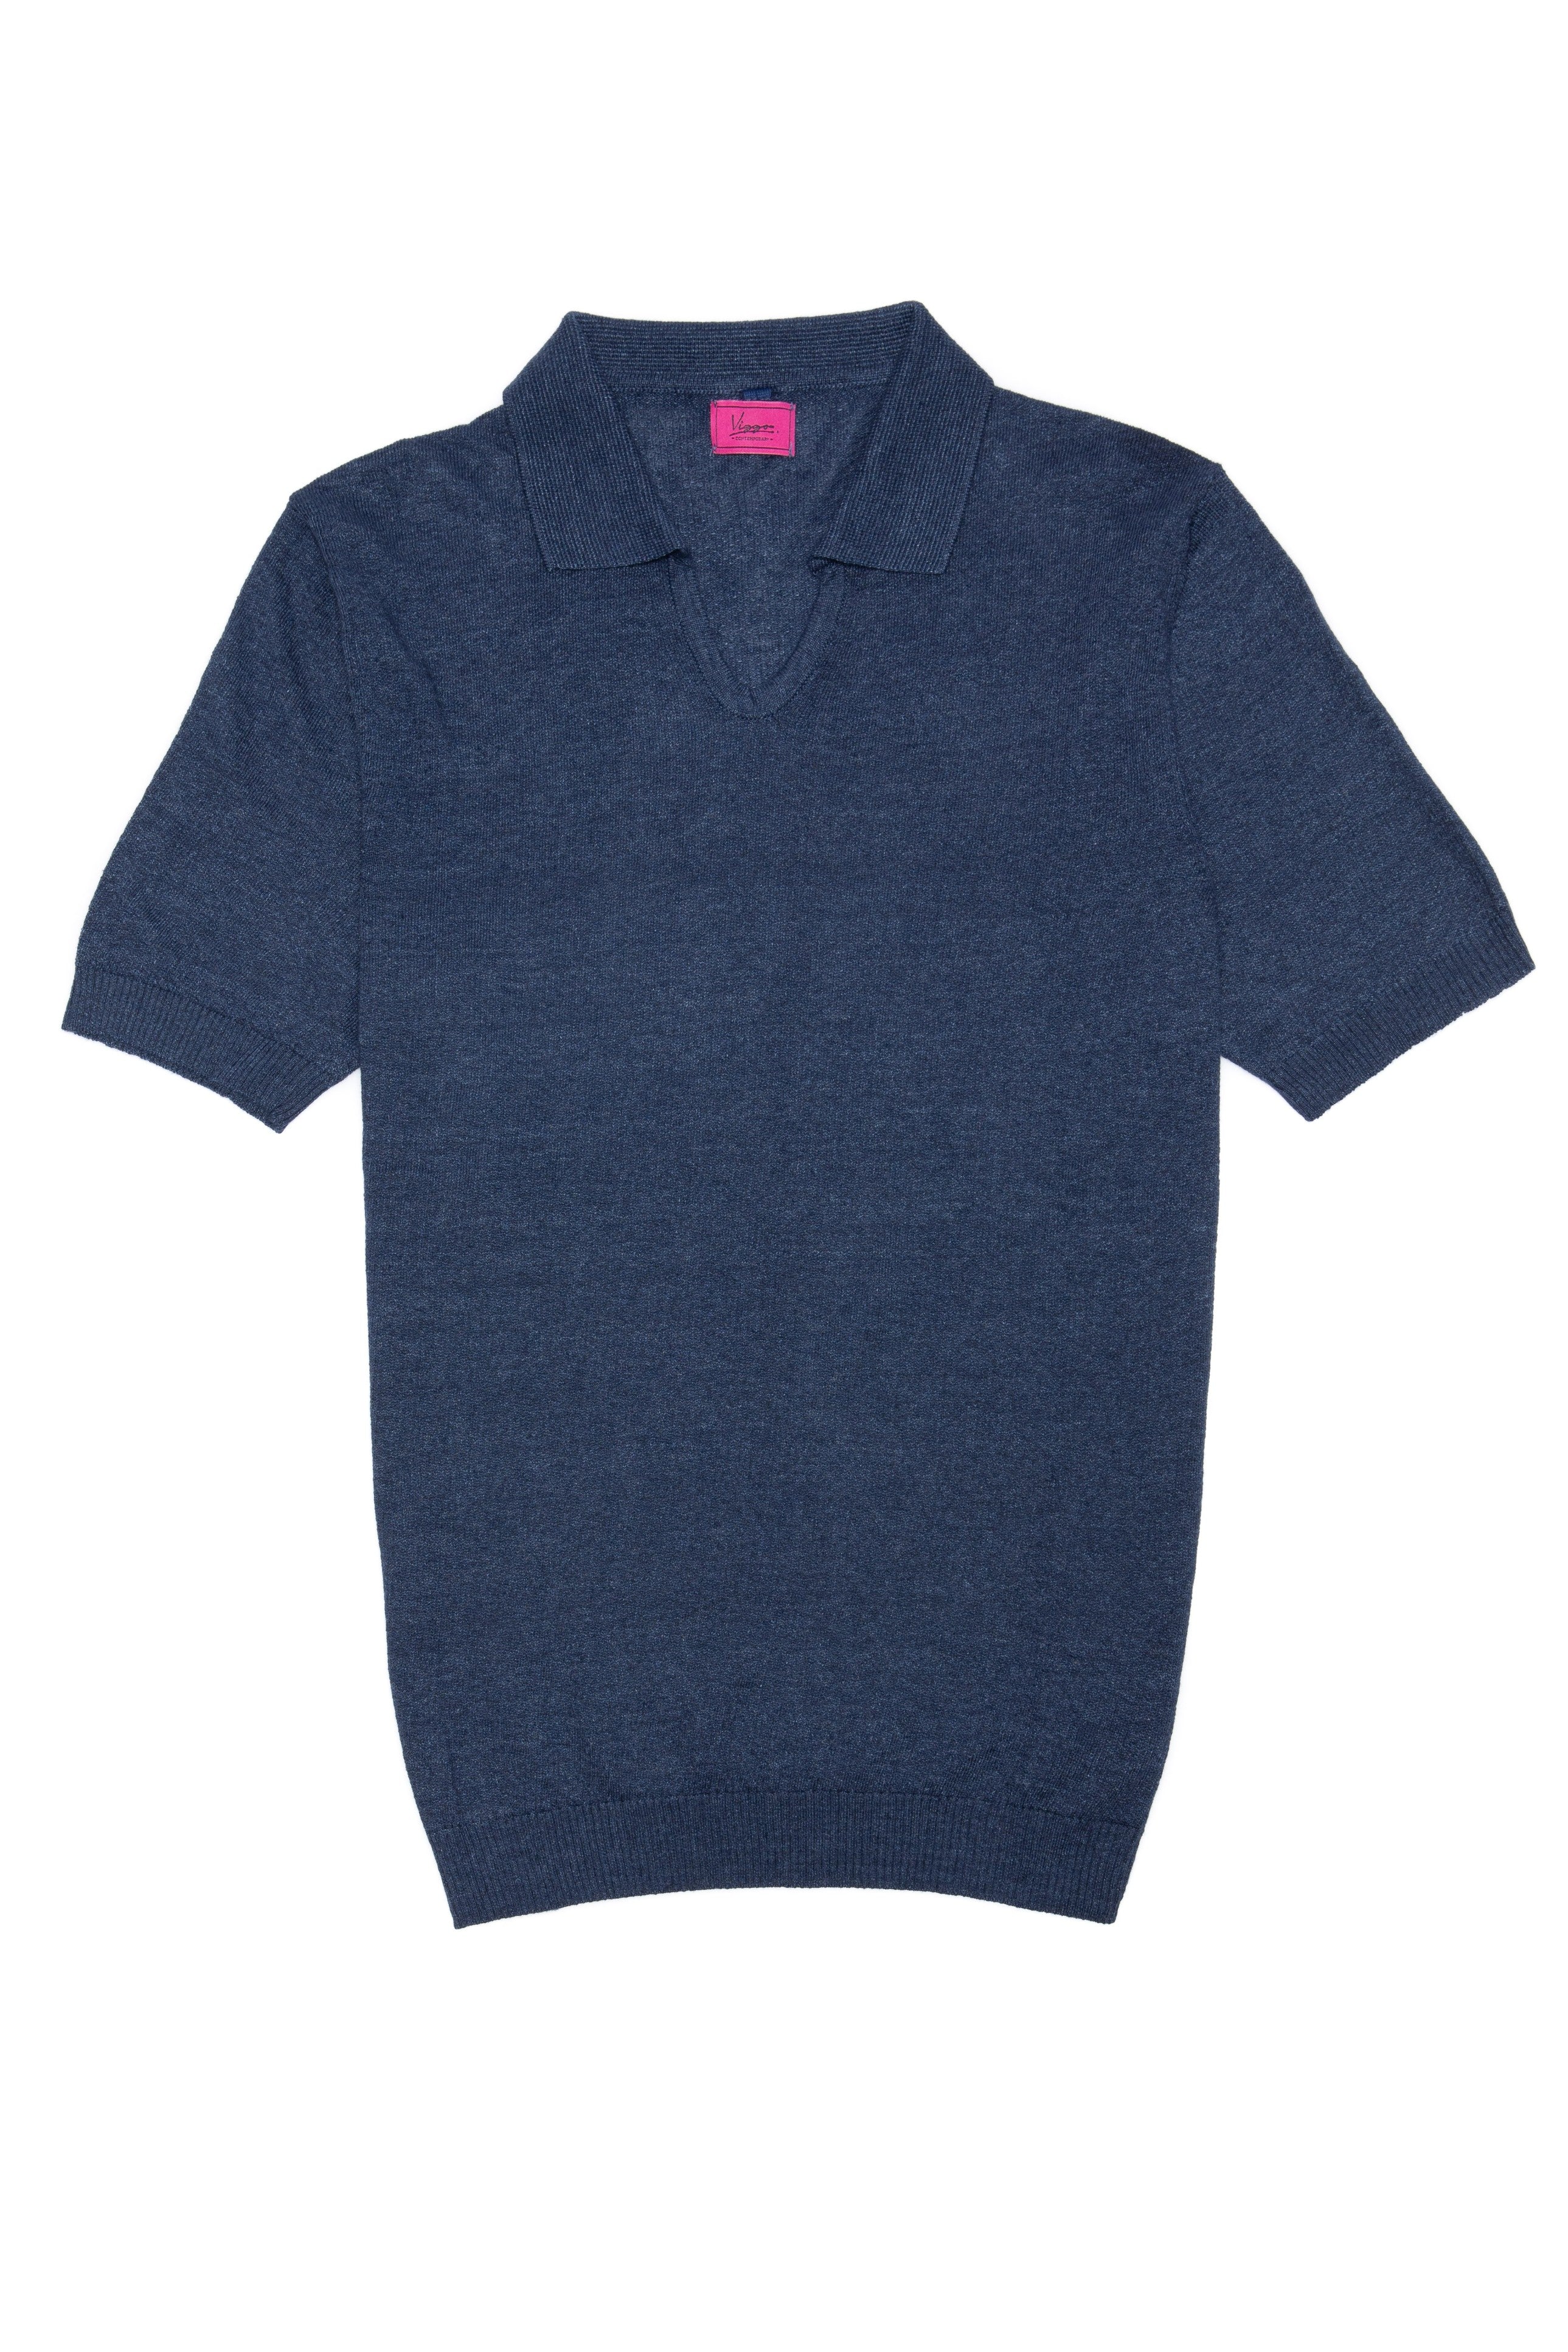 T-shirt casual blu navy con colletto a polo